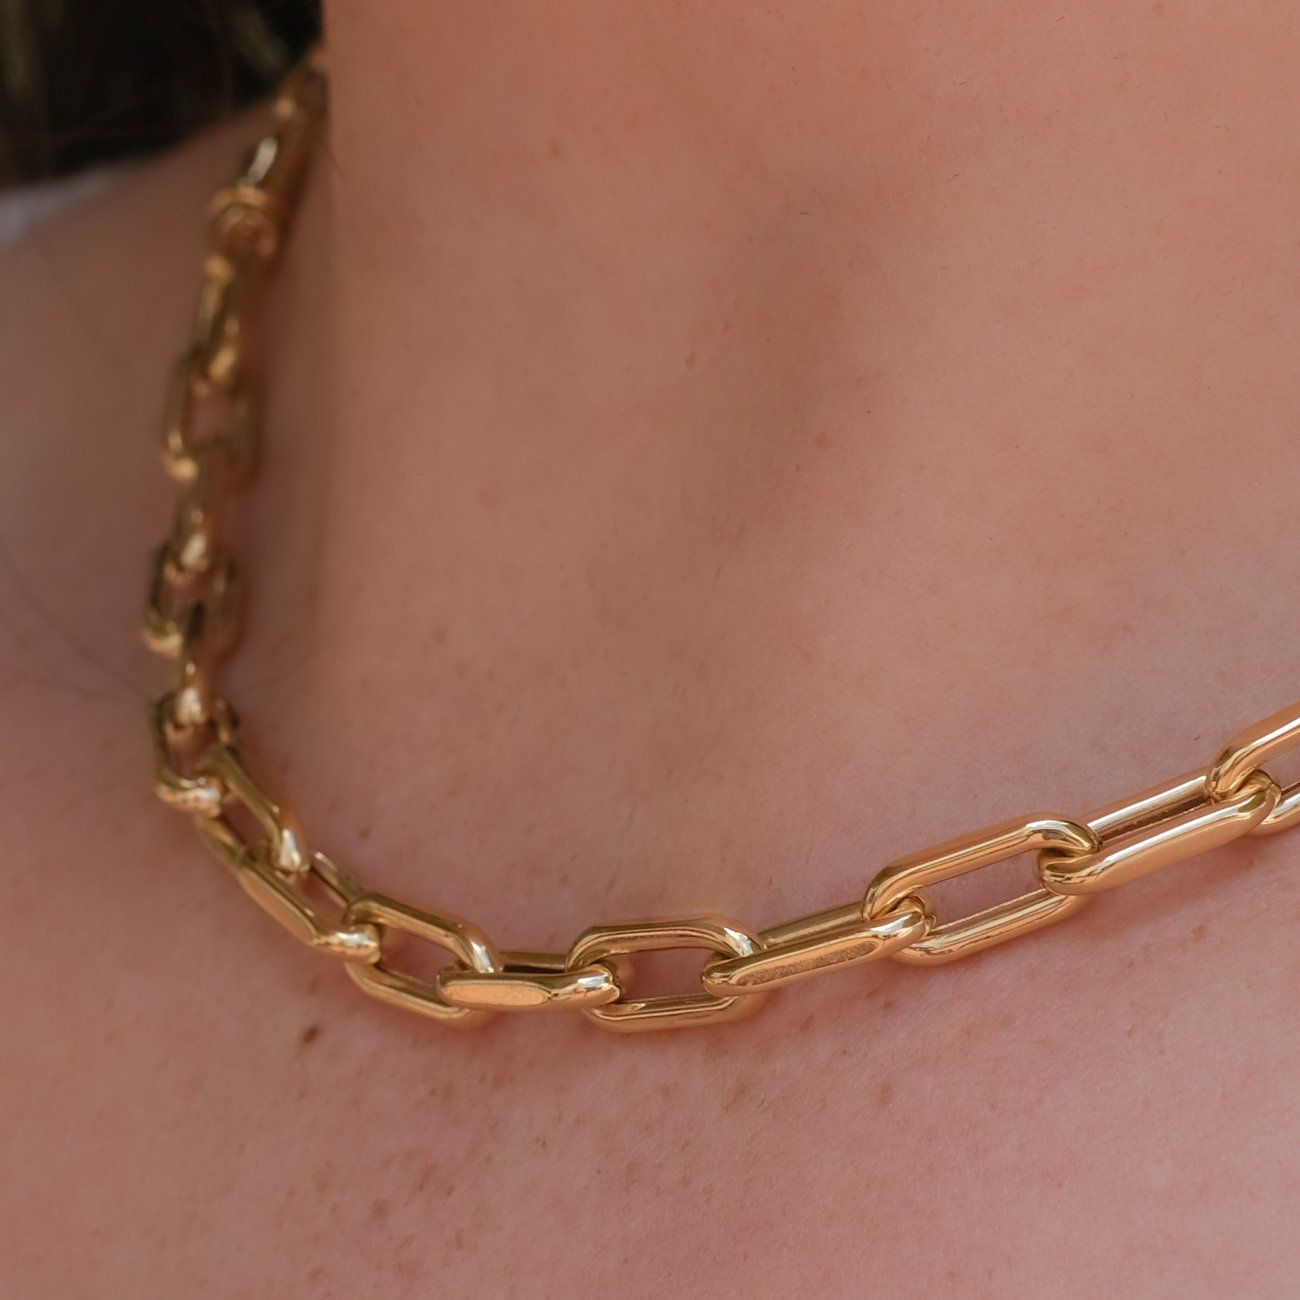 Santana Long Link Chain Necklace Necklaces Princess Bride Diamonds 